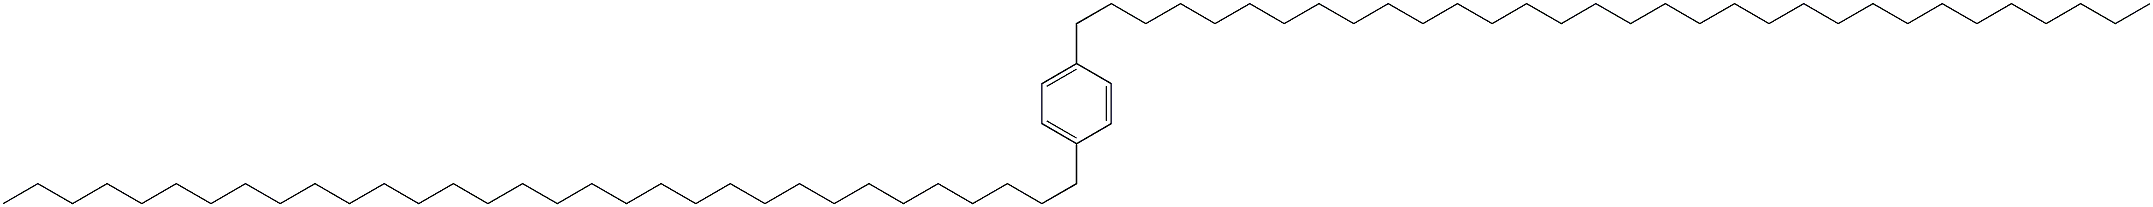 1,4-Di(dotriacontan-1-yl)benzene Structure